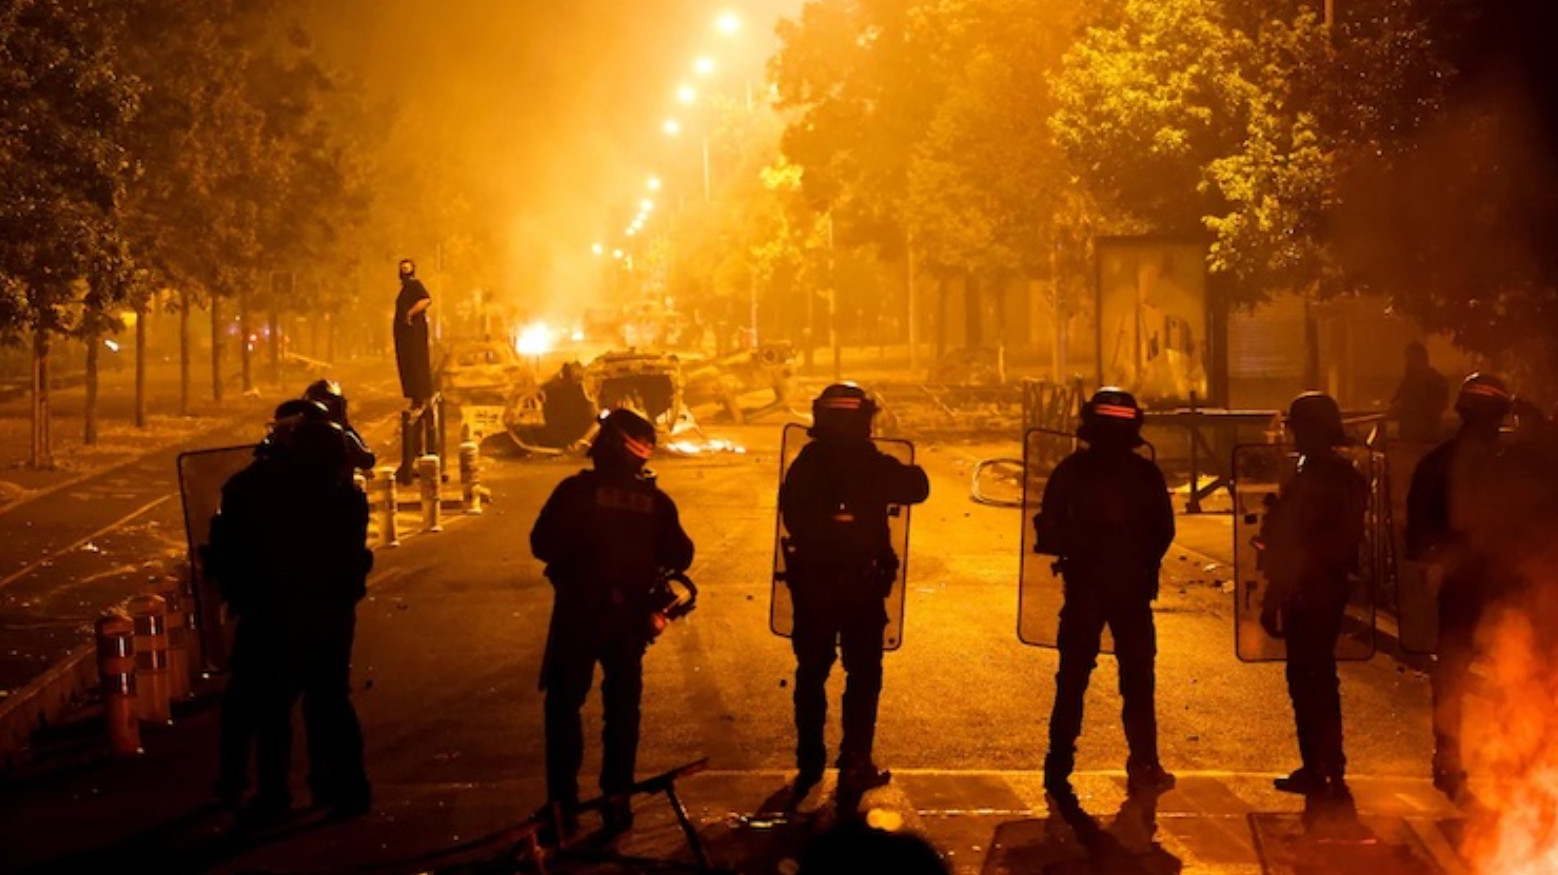 Ταραχές στη Γαλλία: Γιατί οι δρόμοι φλέγονται και πάλι - Ισλαμοφοβία, αστυνομική βία και συστηματική τύφλωση για τα πραγματικά αίτια